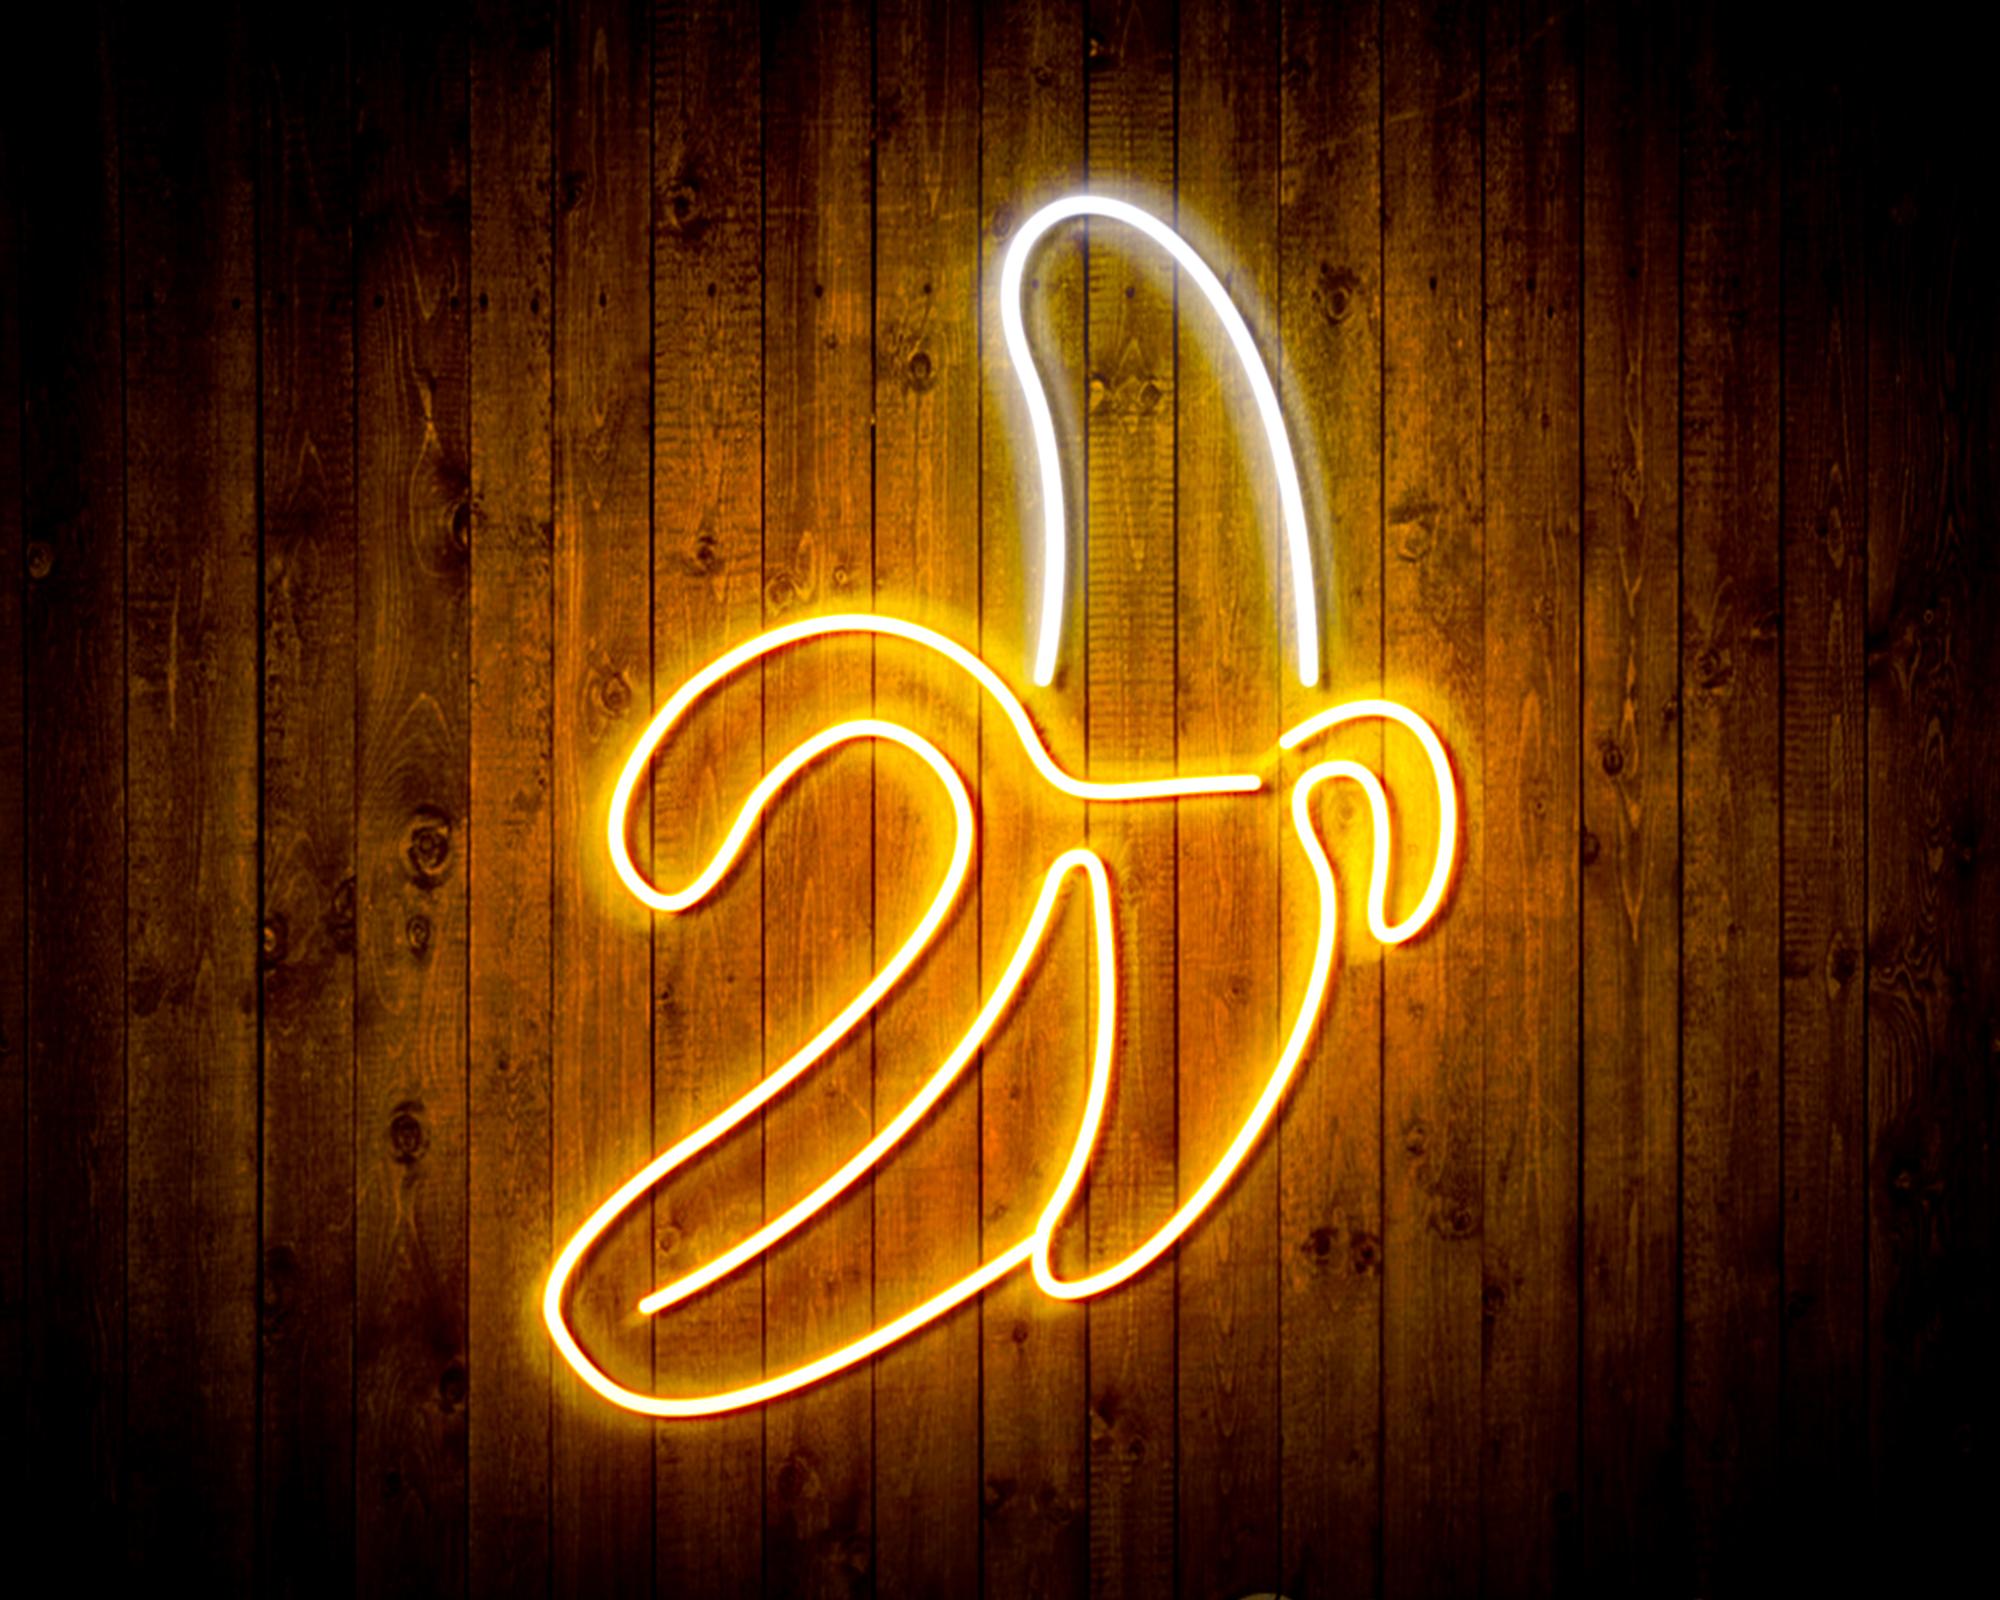 Banana LED Neon Sign